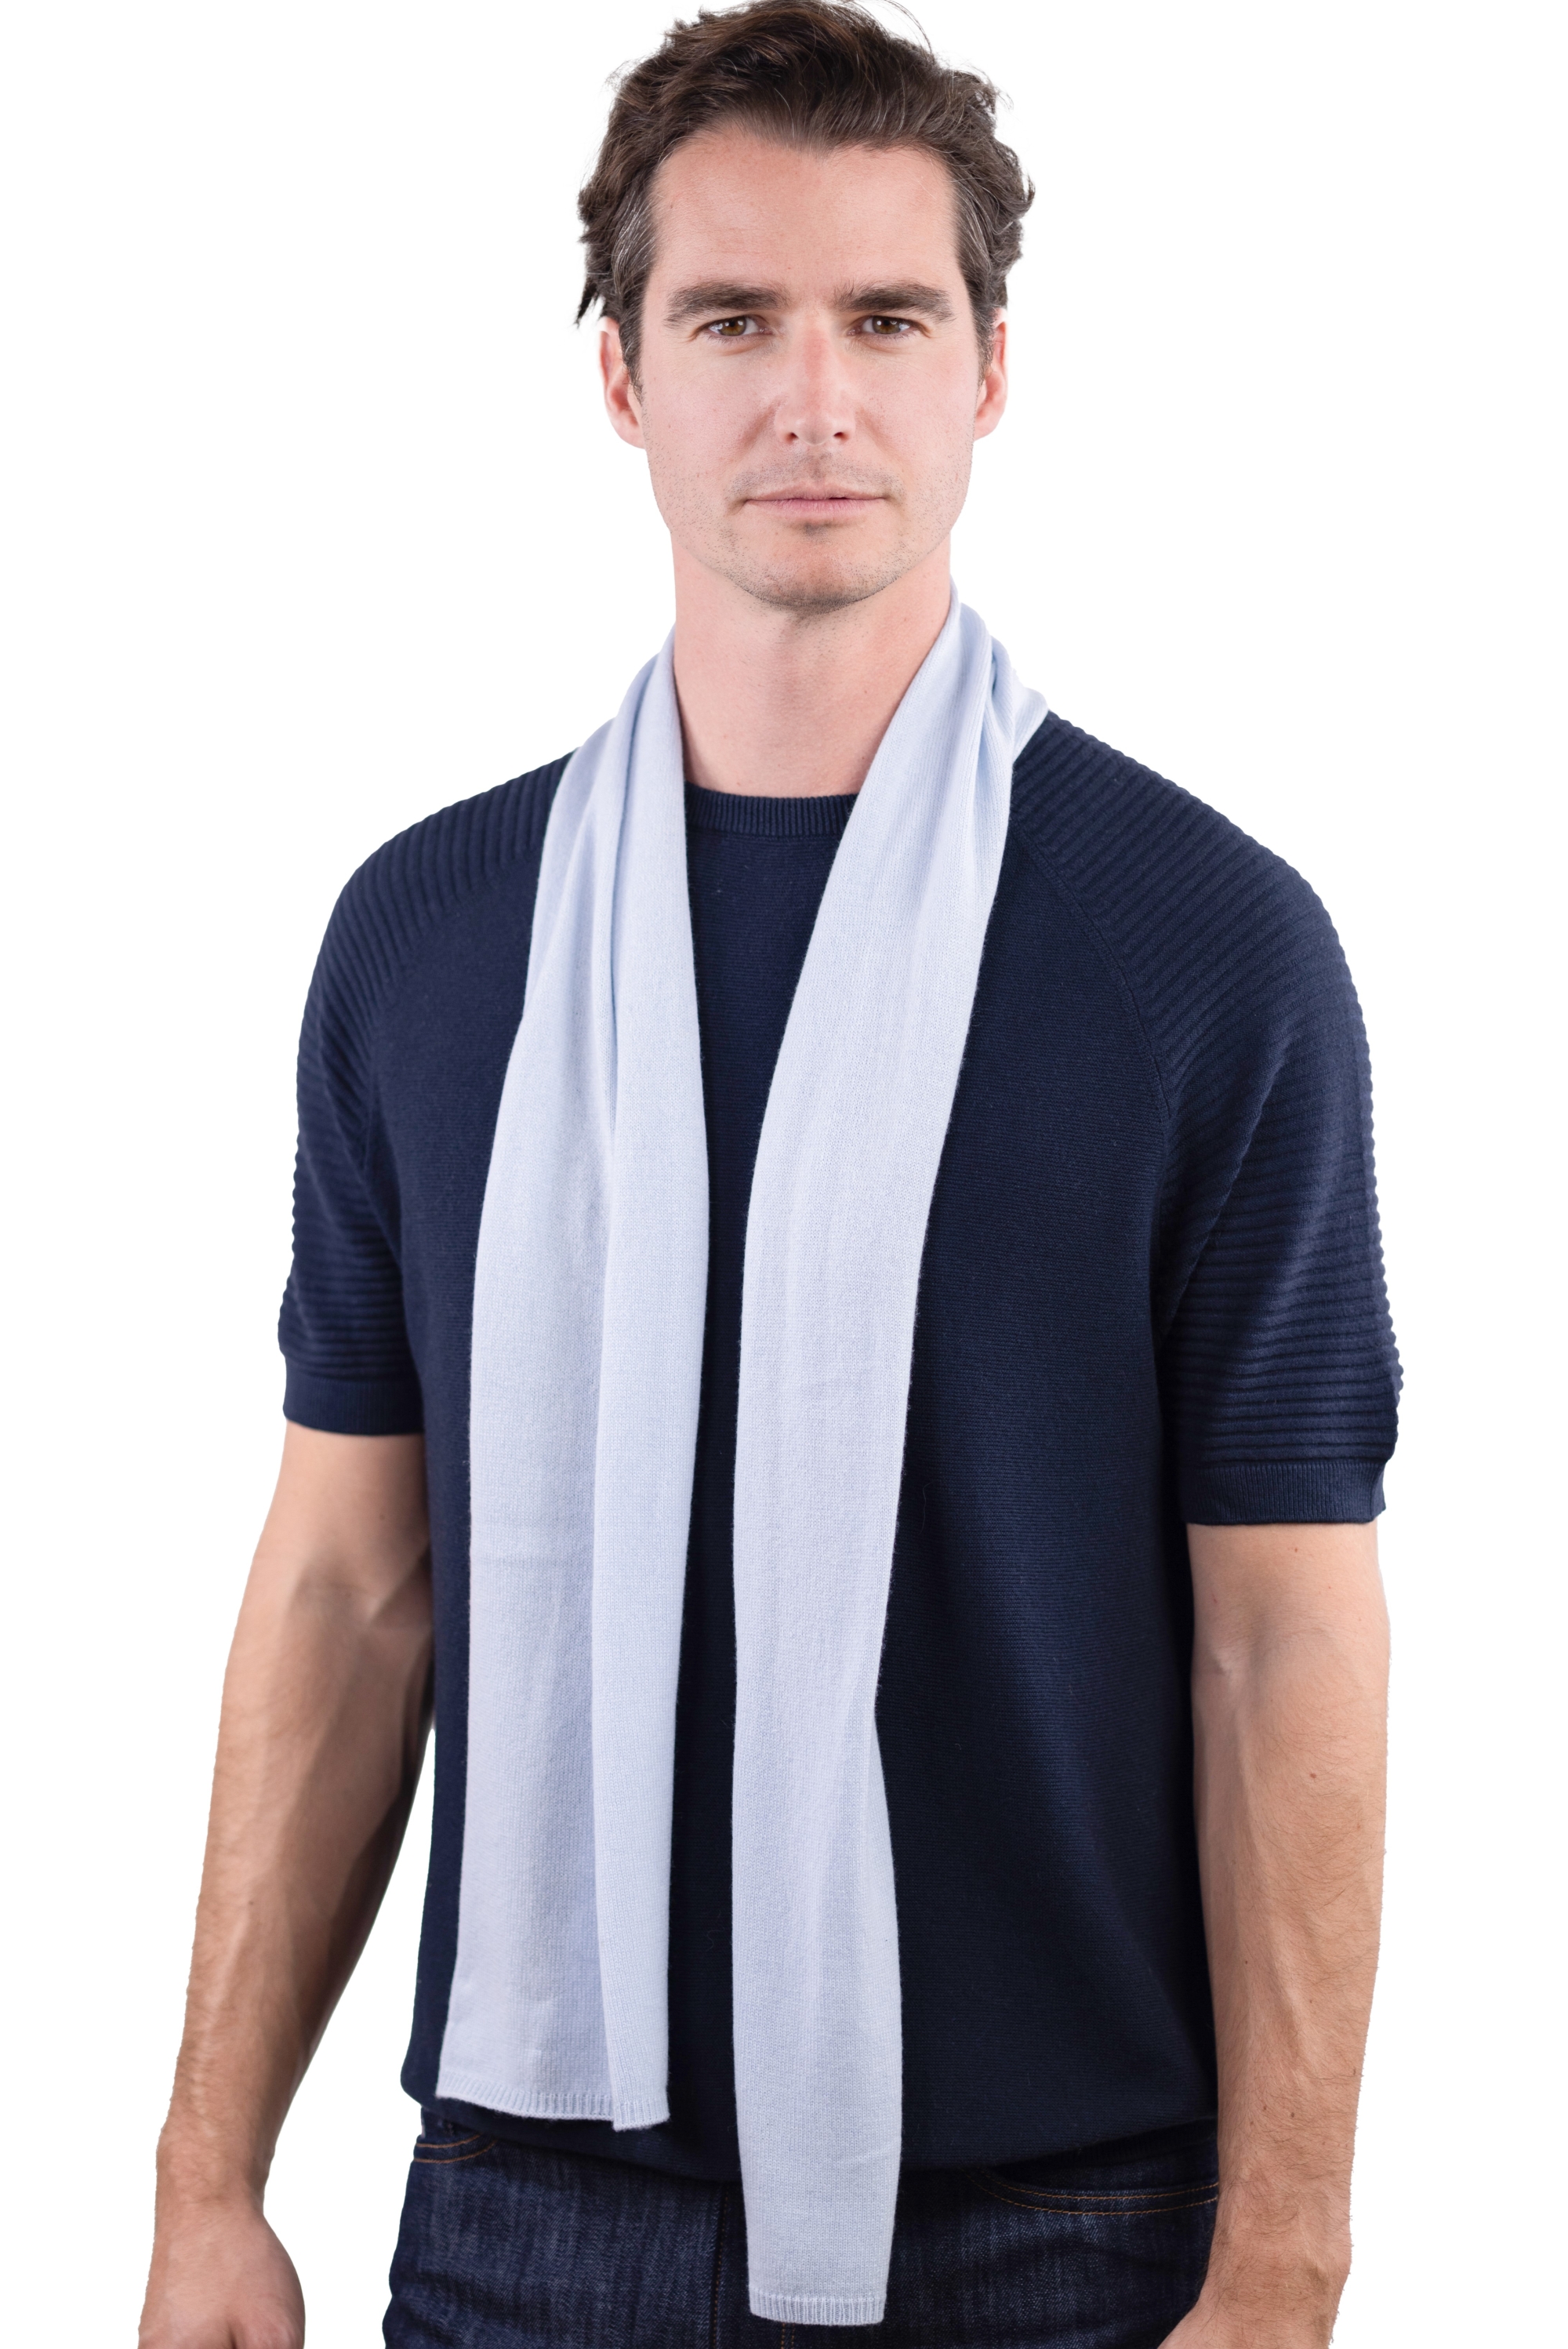 Cashmere accessories ozone whisper 160 x 30 cm